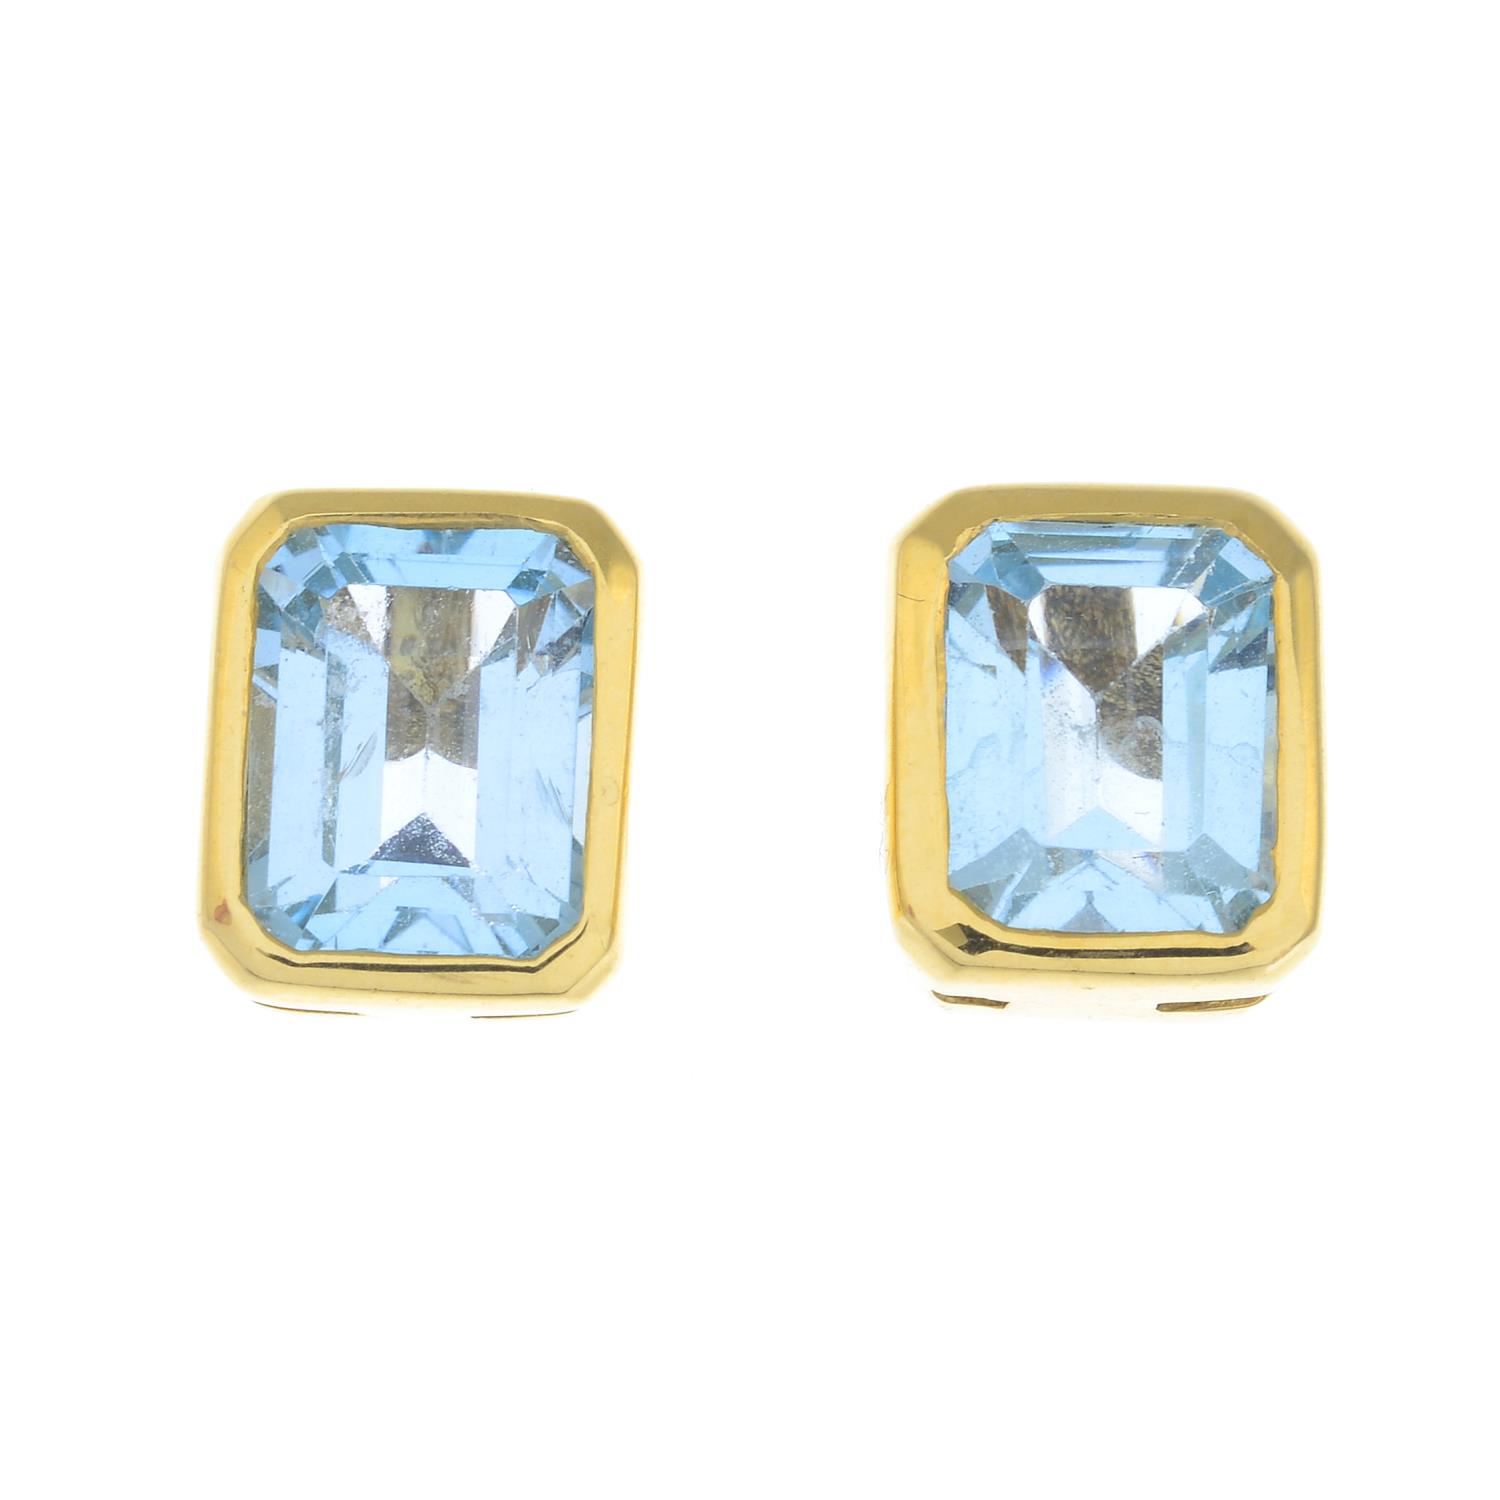 A pair of blue topaz stud earrings.